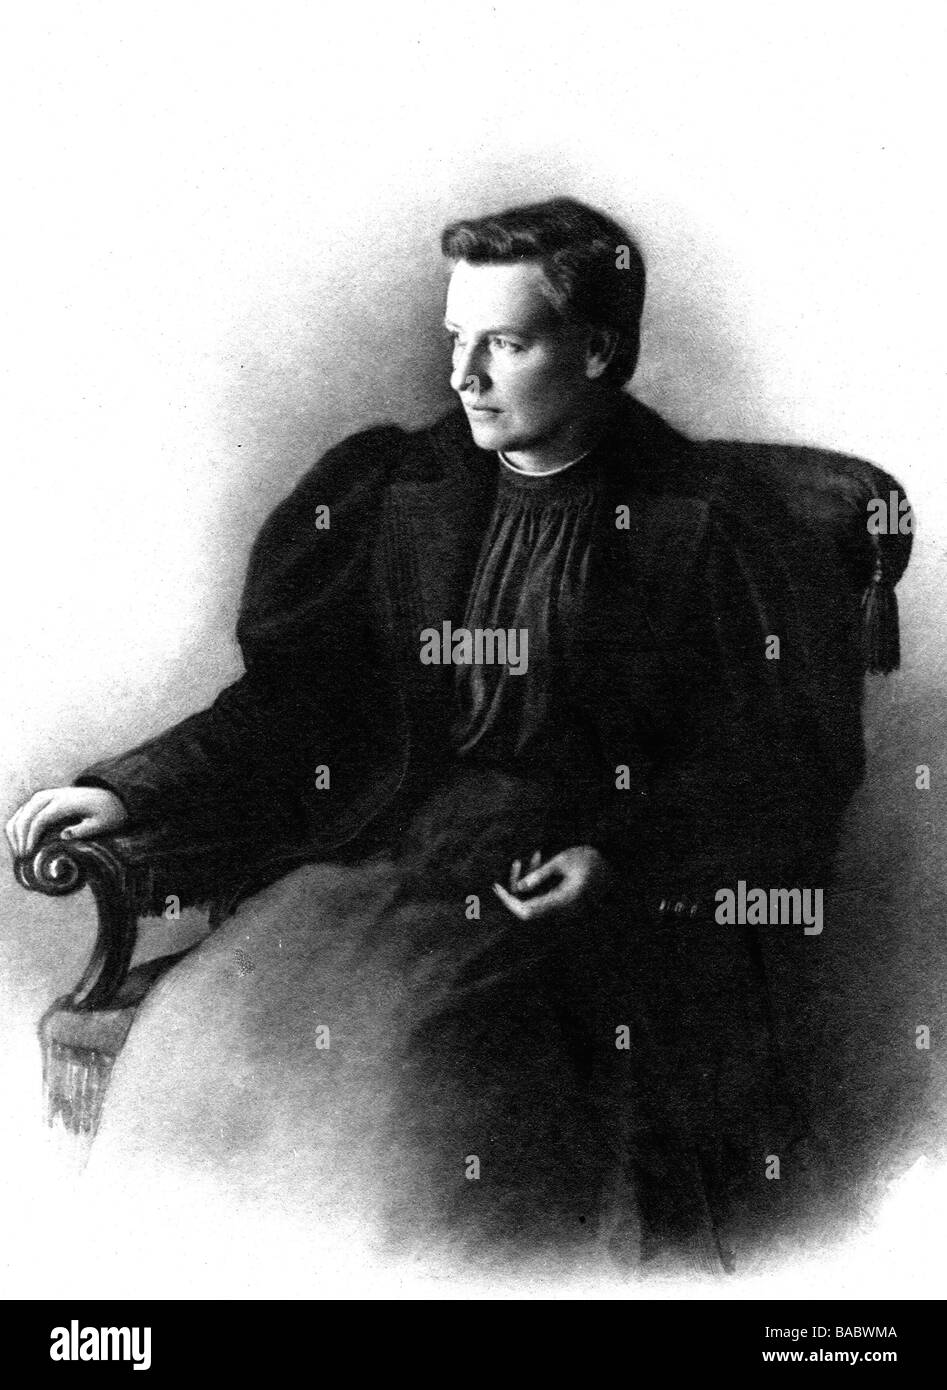 Adams-Lehmann, Hope Bridge, 17.12.1855 - 10.10.1916, britisch-deutscher Arzt/Arzt und Autor/Schriftsteller, sitzend, Foto aus ihrem Buch "Gesundheit im Haus" (Die Gesundheit zu Hause), München, ca. 1899, Stockfoto